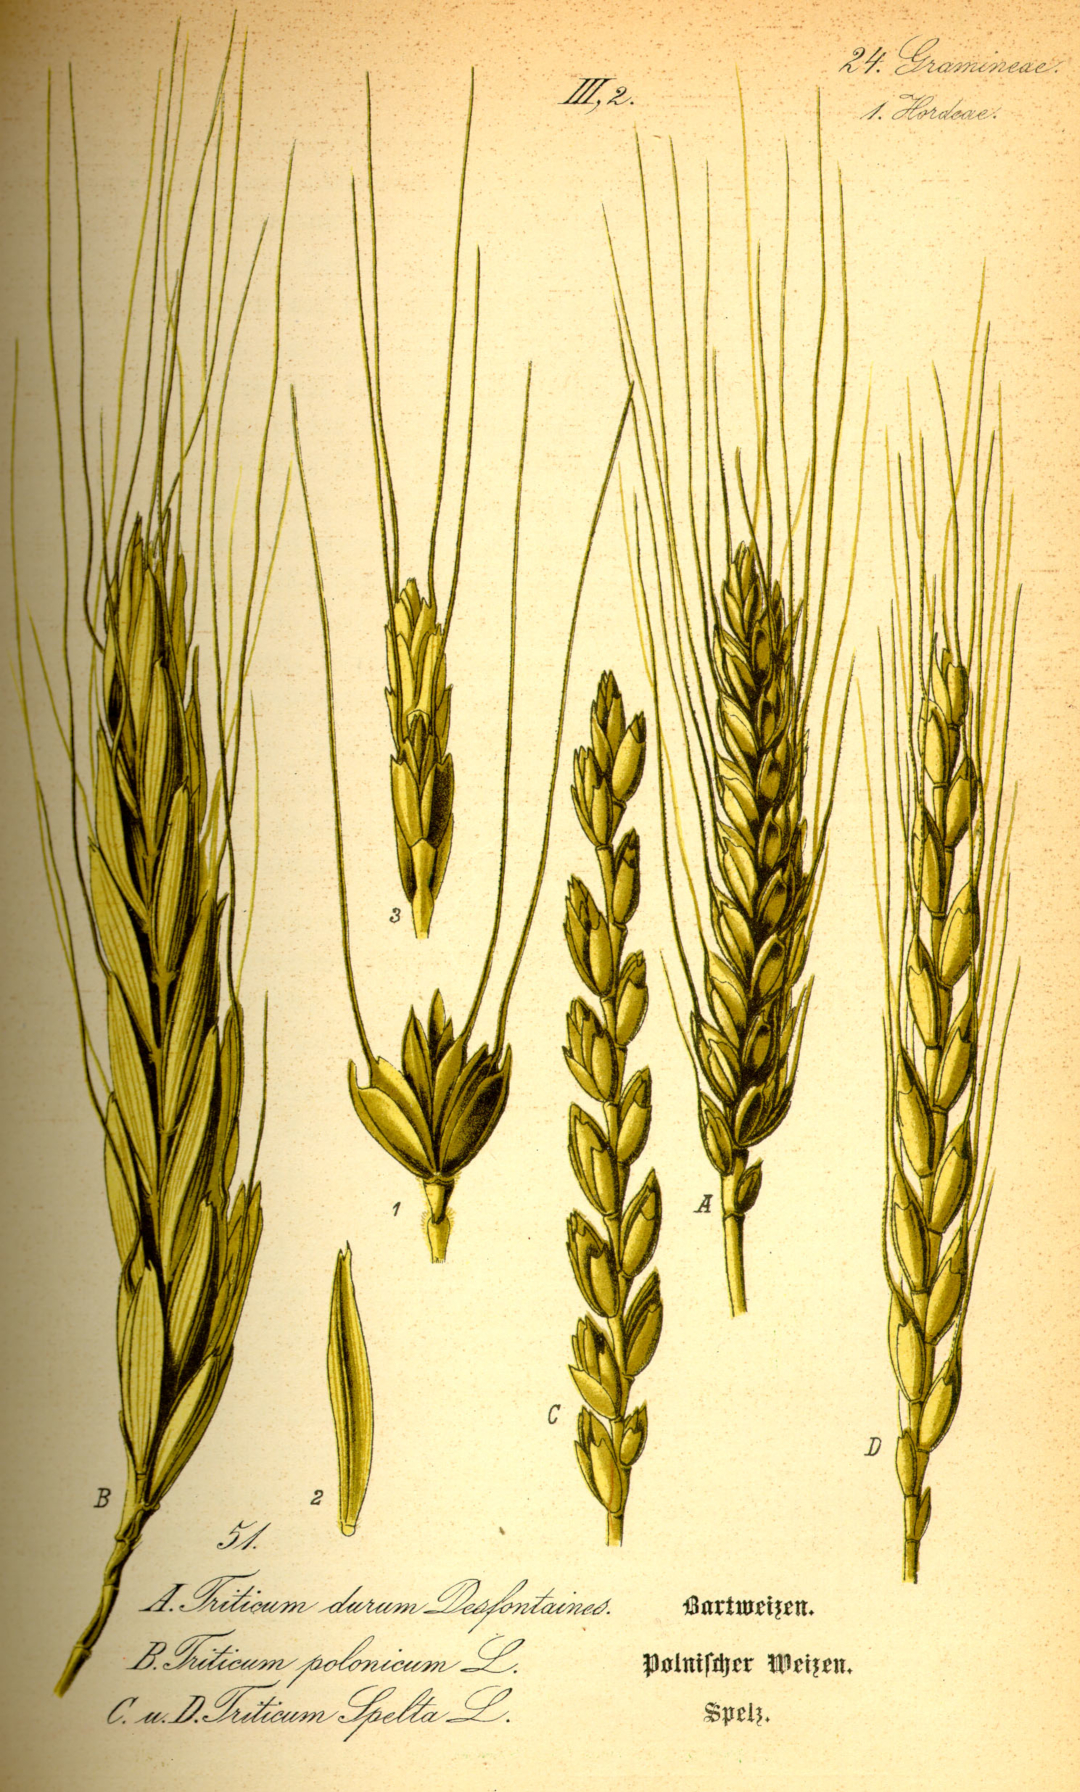 ilustracja z książki z XIX wieku przedstawiająca kłosy pszenicy zwykłej